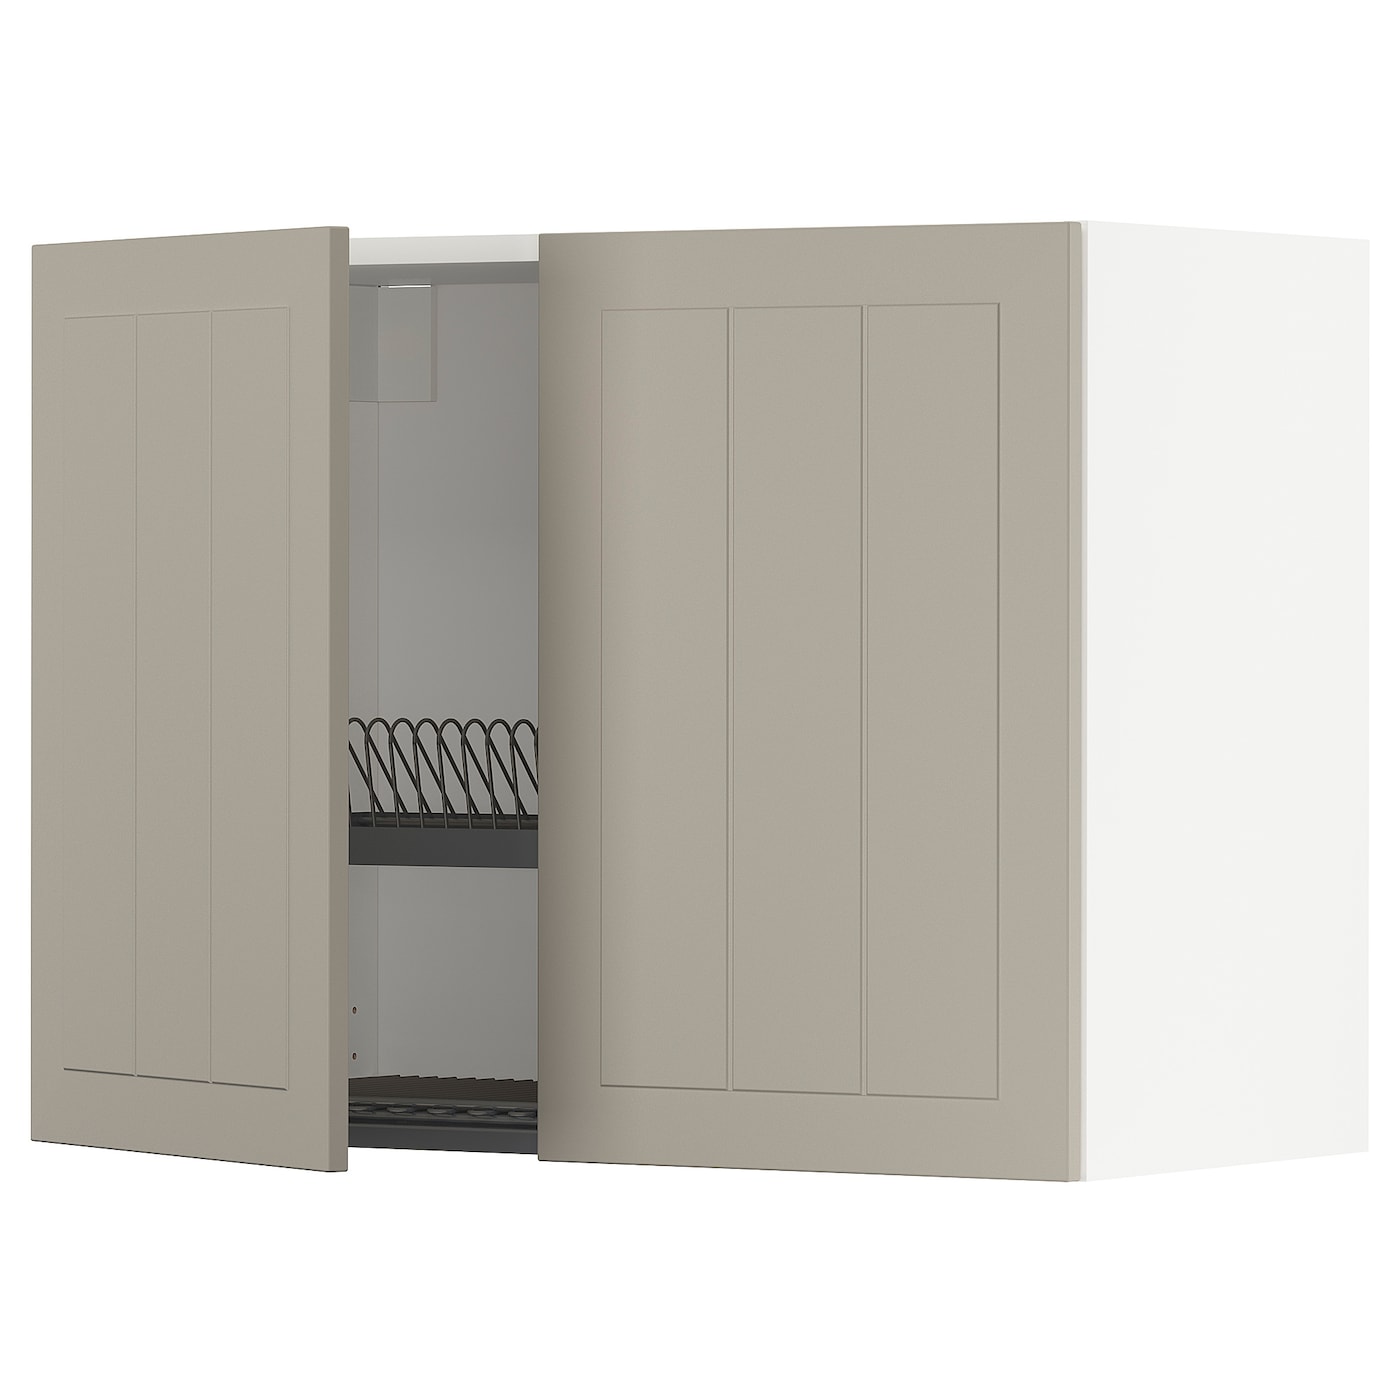 Навесной шкаф с сушилкой - METOD IKEA/ МЕТОД ИКЕА, 60х80 см, белый/светло-коричневый